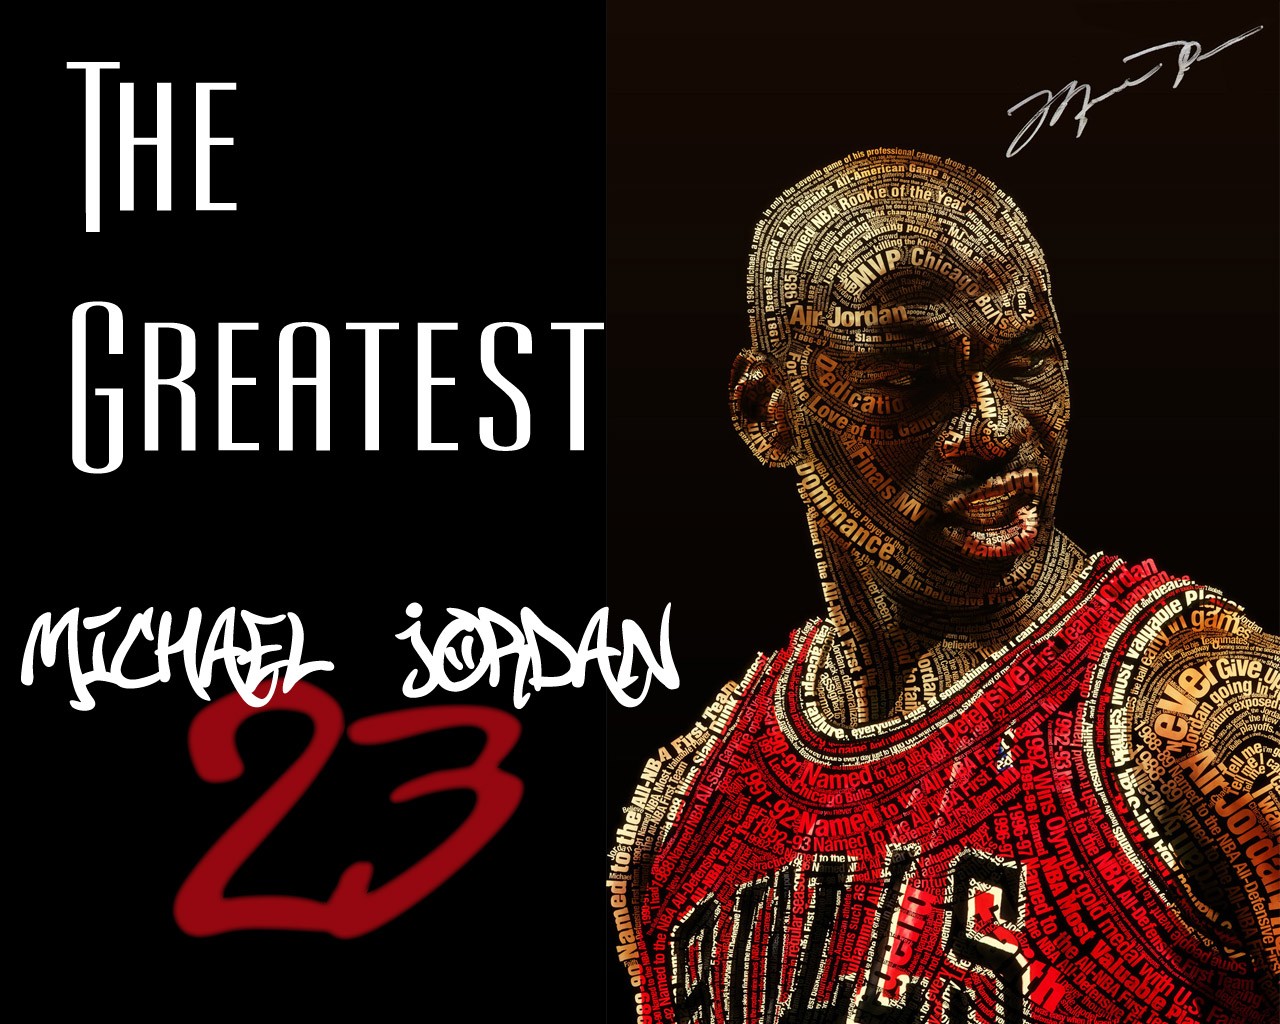 Michael Jordan 23 Wallpaper Logo 2015 Image Trends Pictures toon